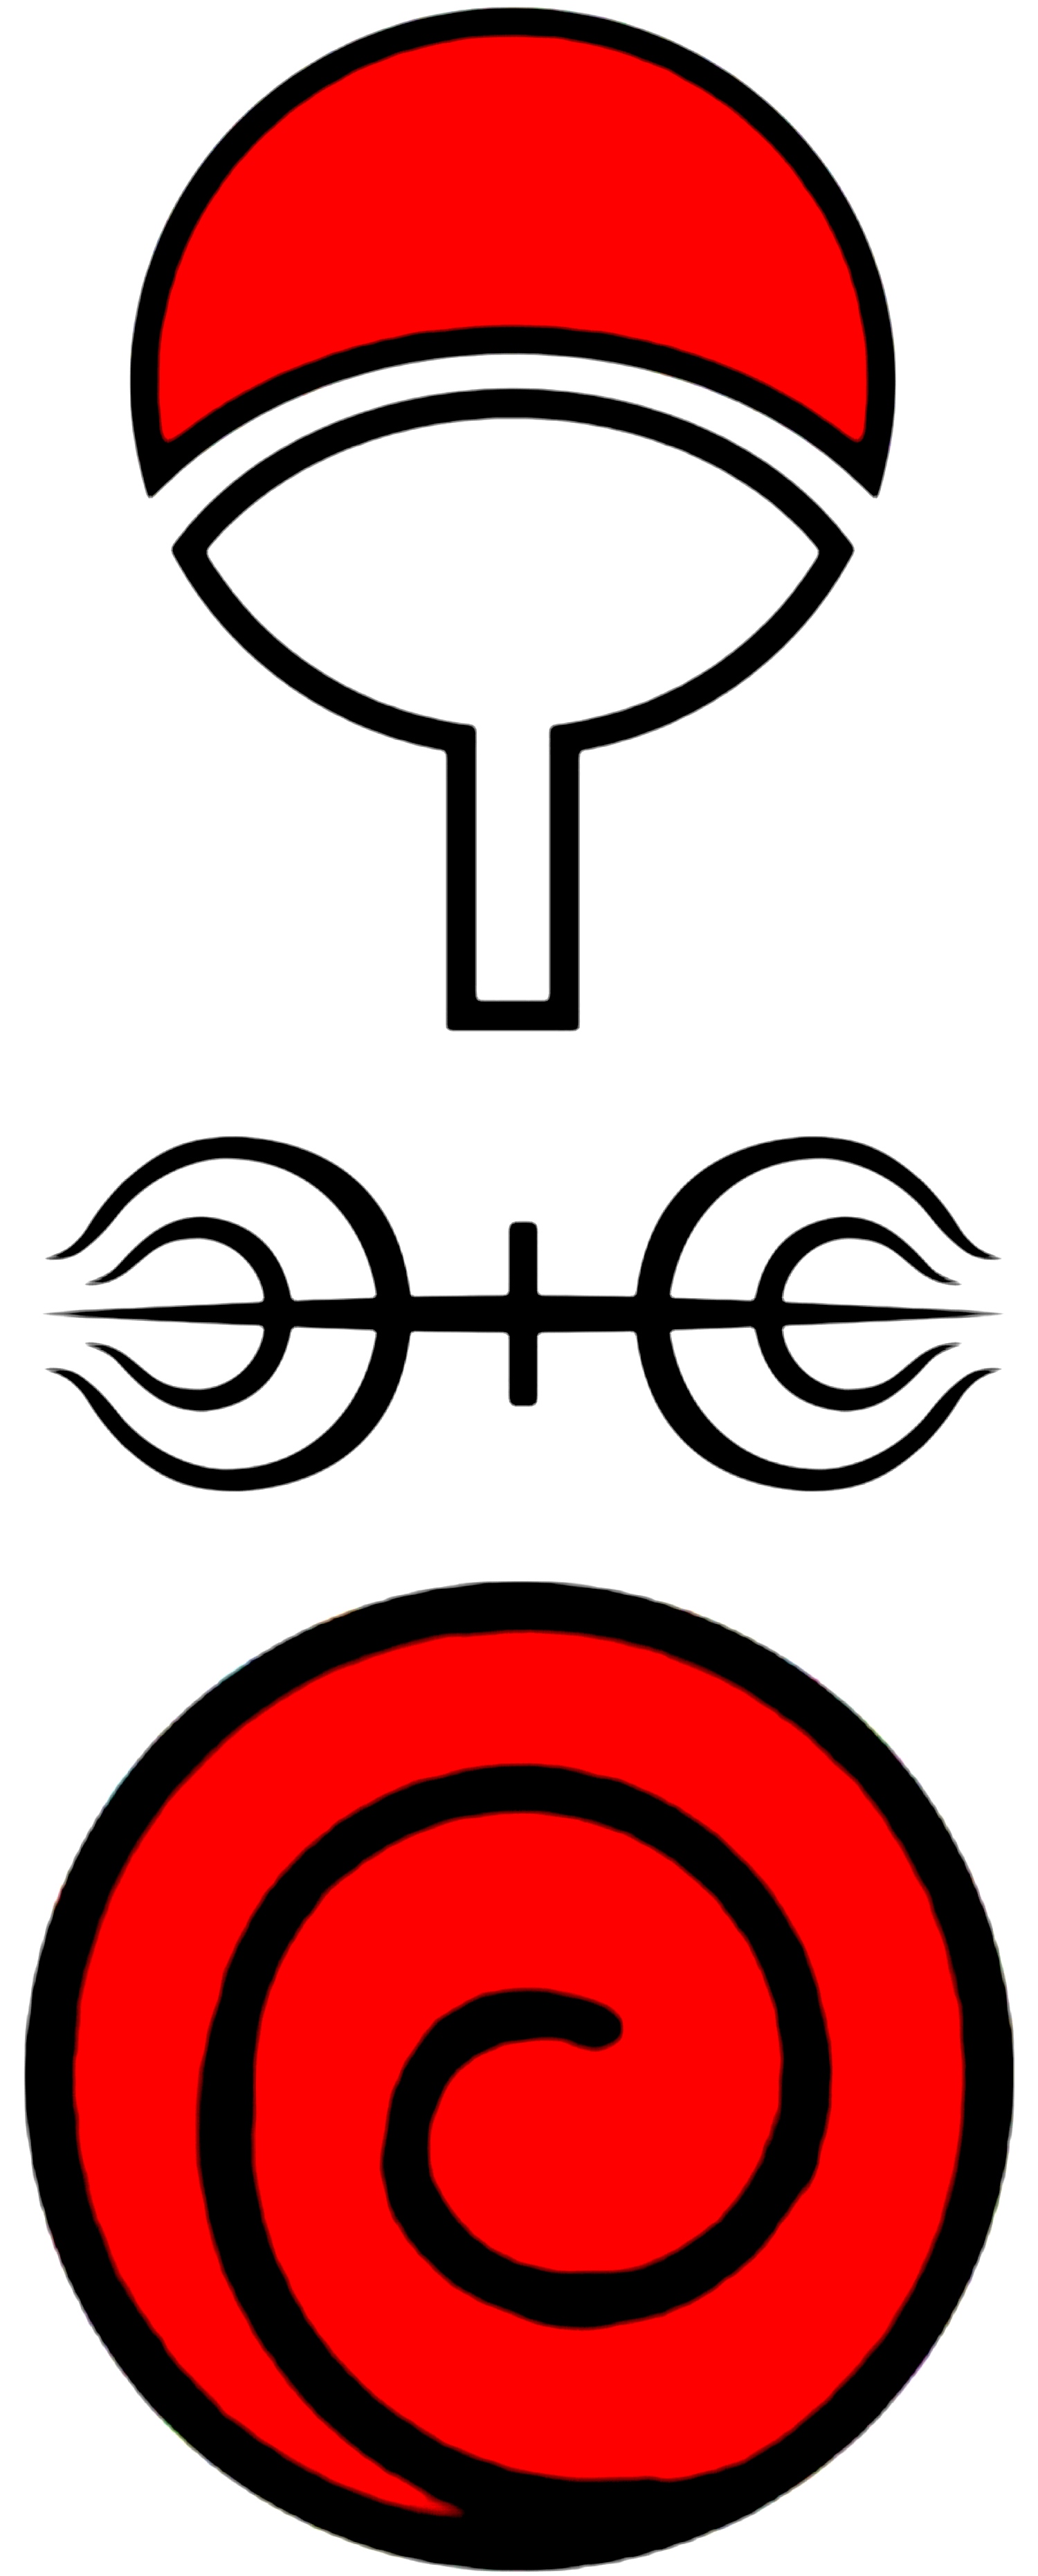 宇智波壁纸族徽图片